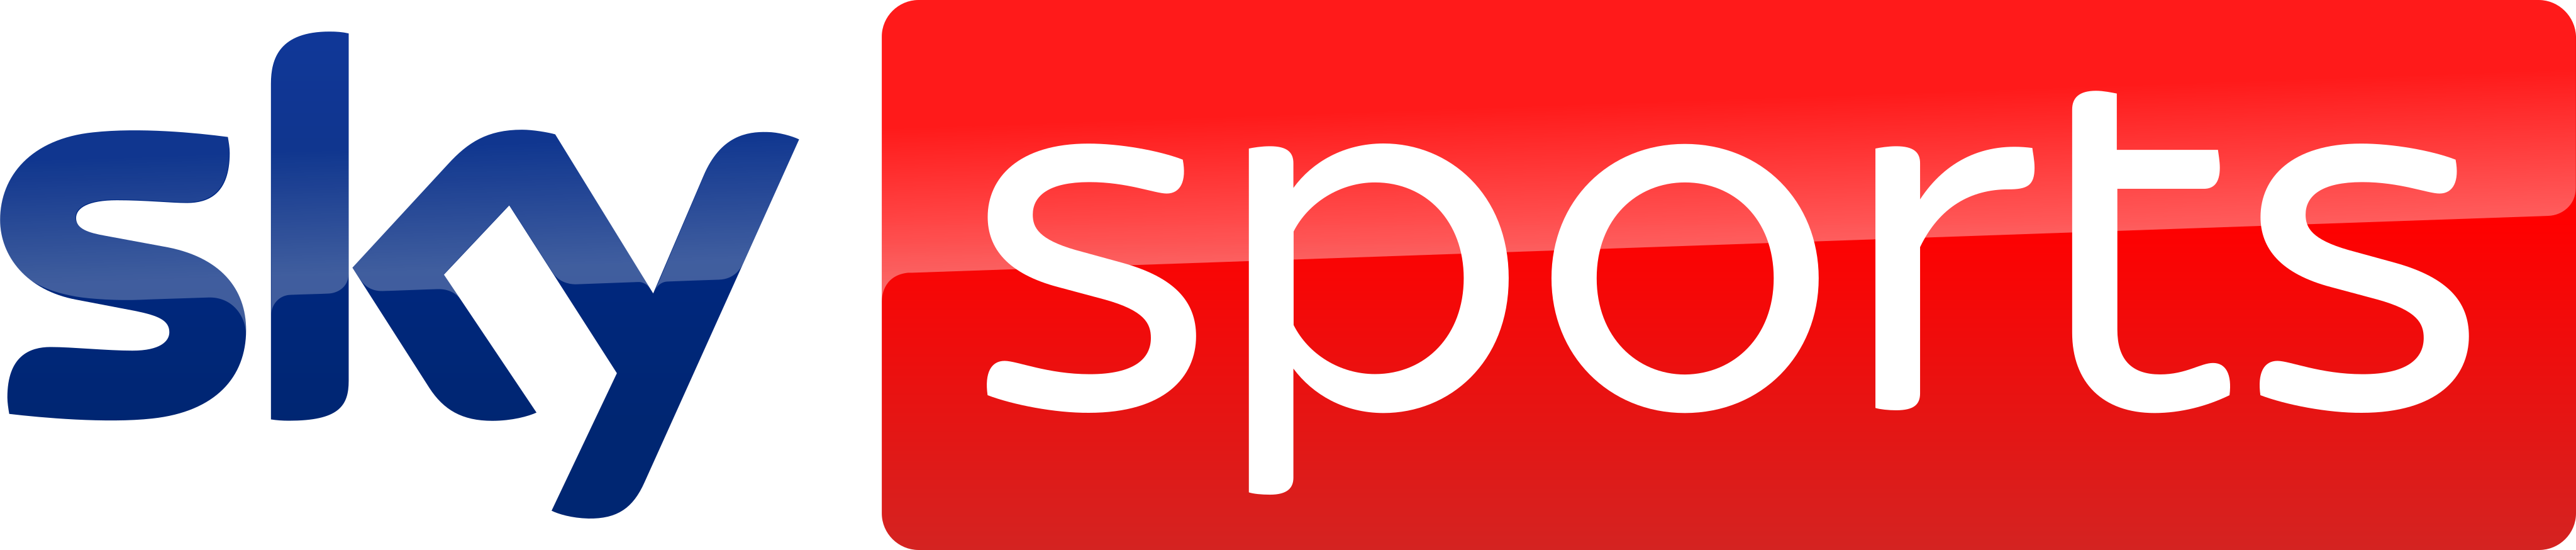 sky-sports-logo-5